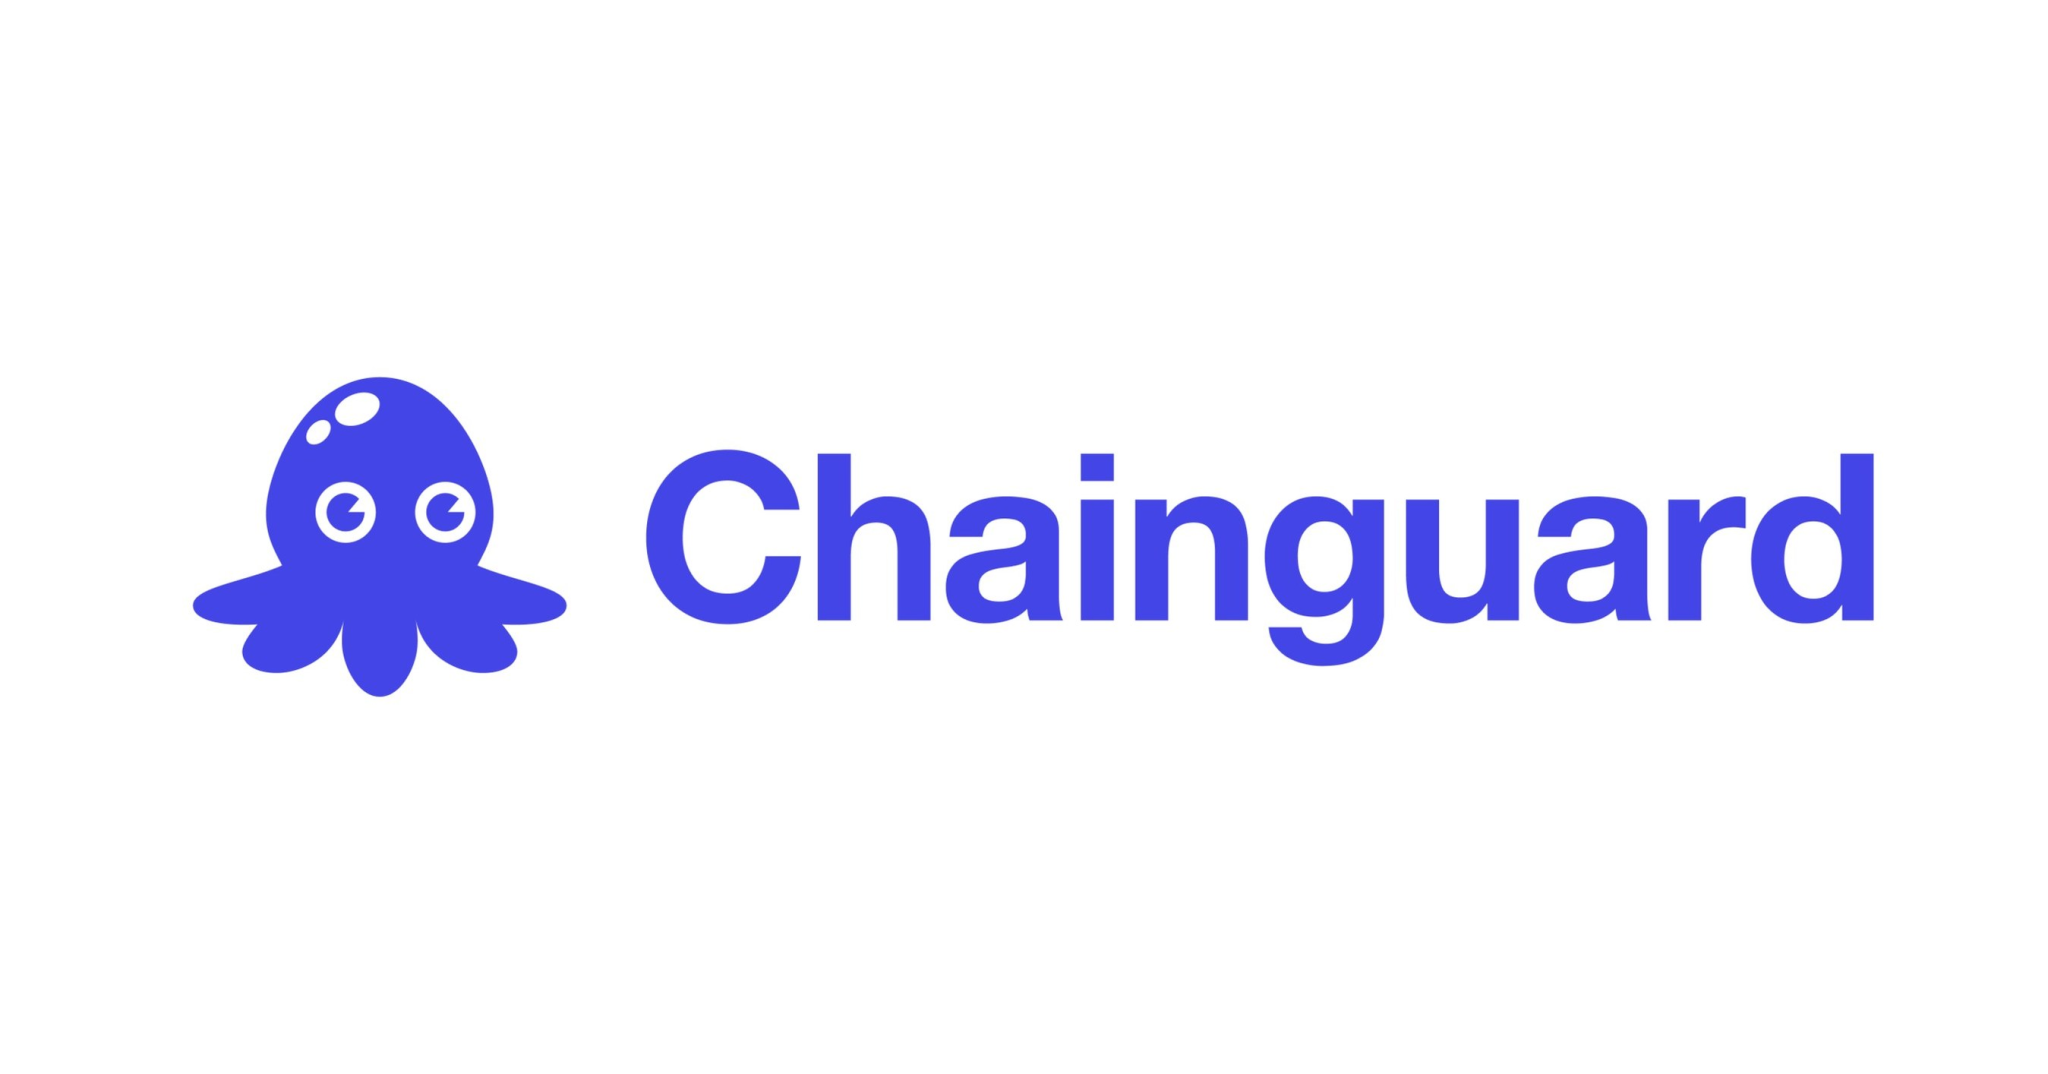 Chainguard